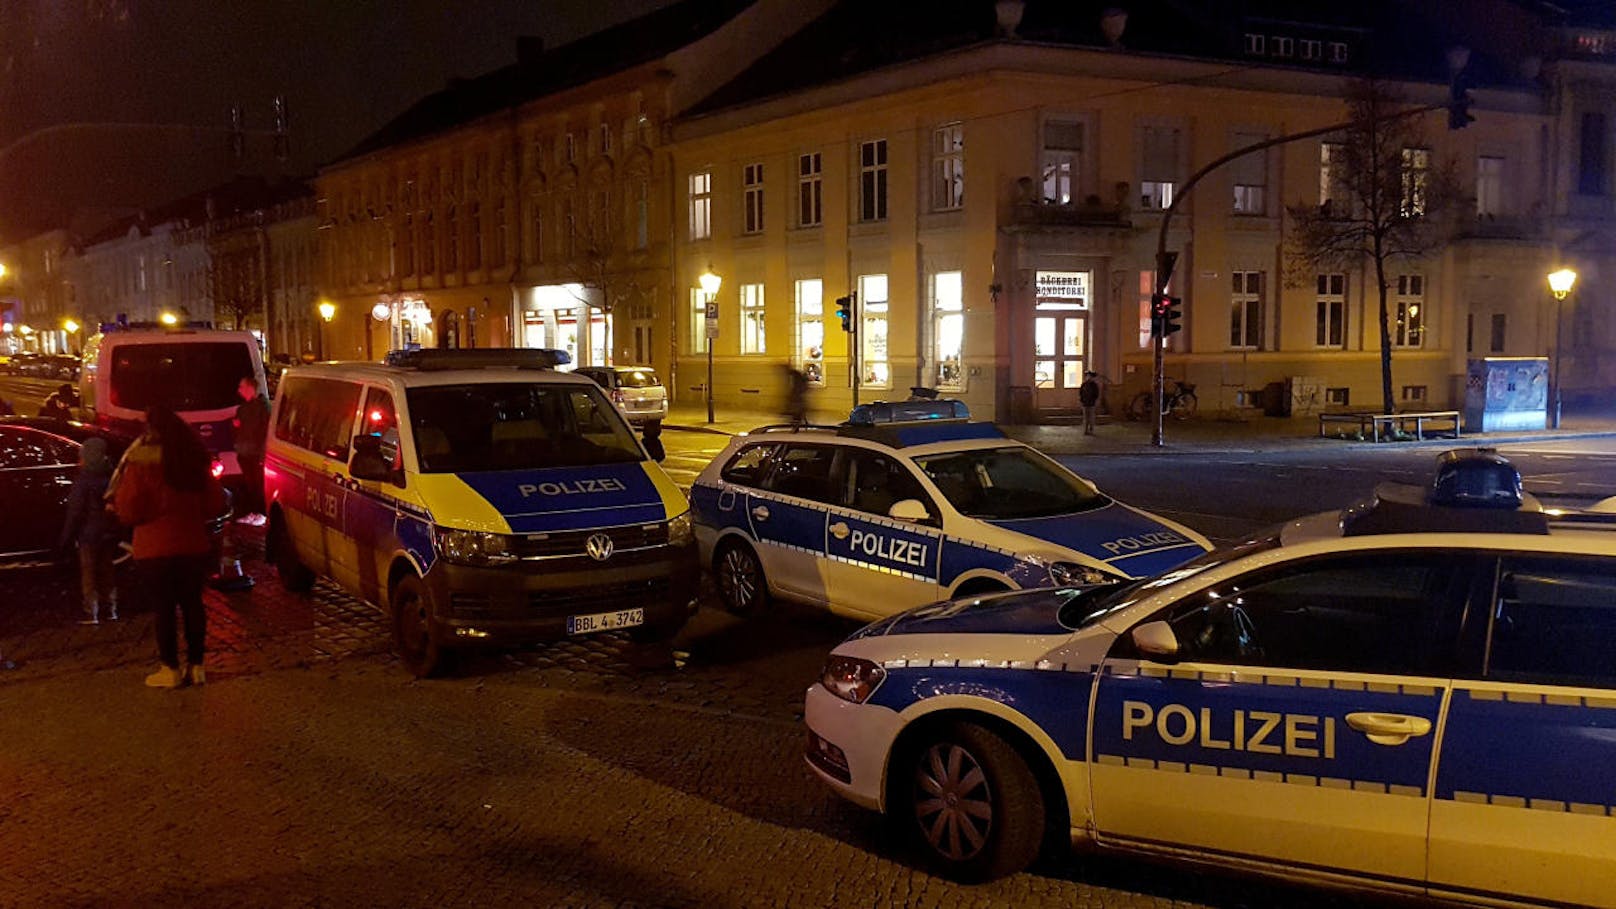 Die Brandenburger Polizei hat zudem angekündigt, die Polizeipräsenz rund um die Weihnachtsmärkte zu verstärken.